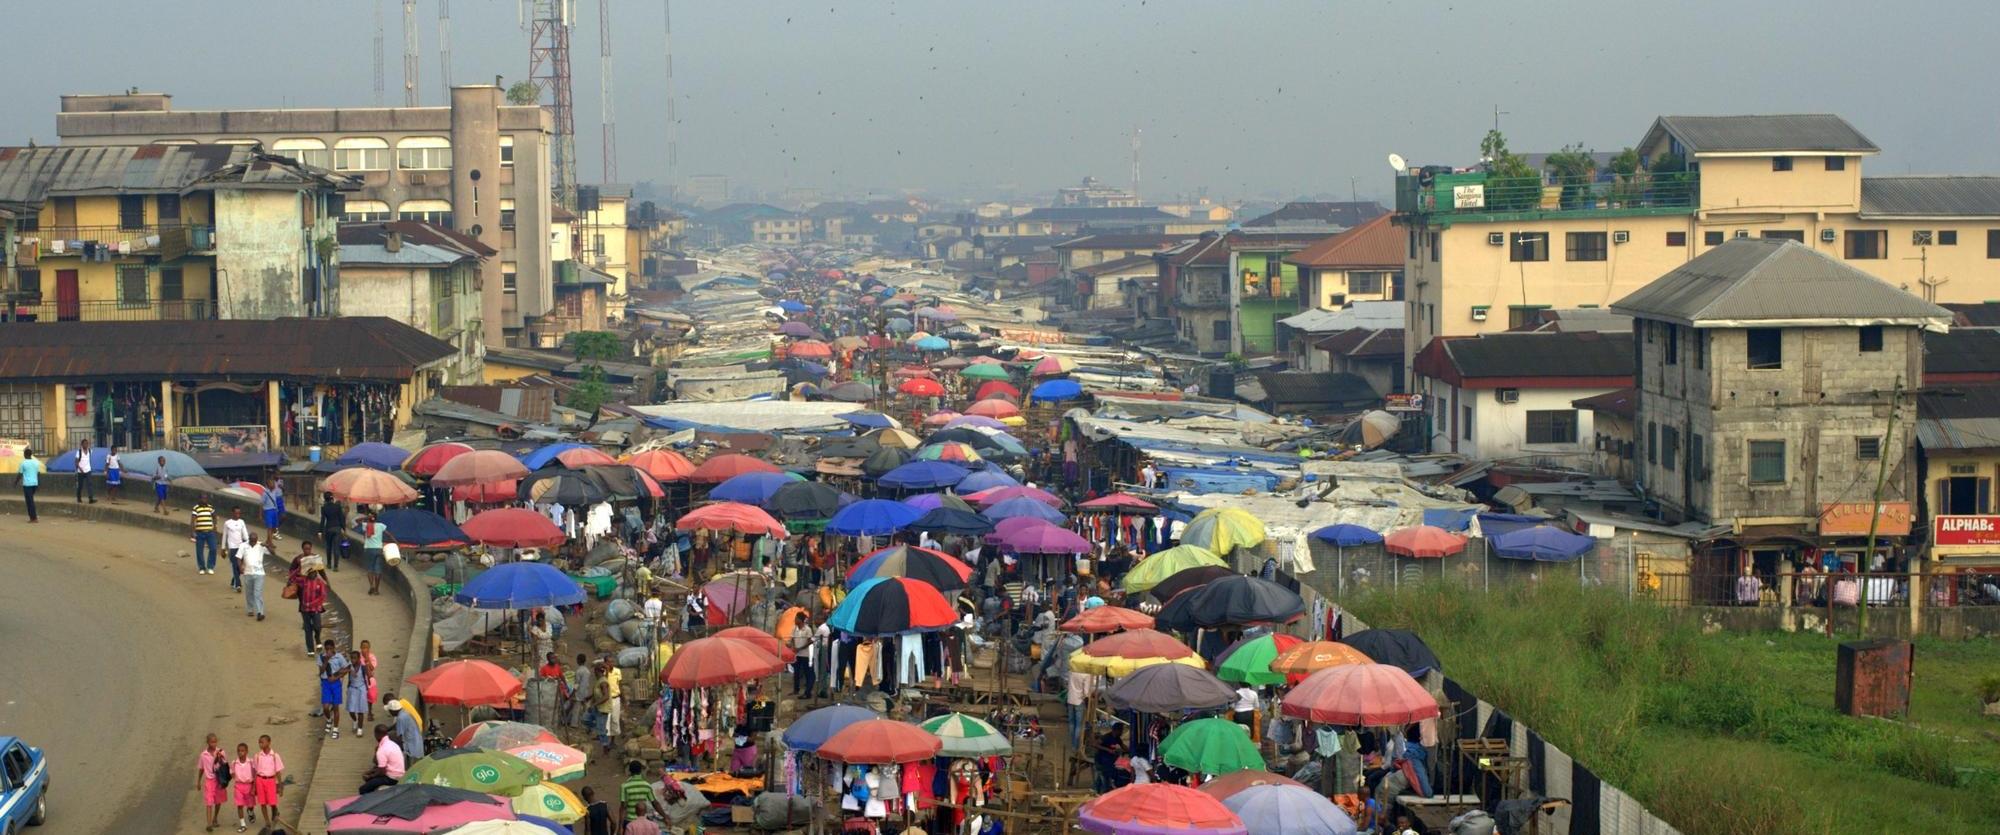 Le marché de Port Harcourt, Nigéria. Décembre 2011.